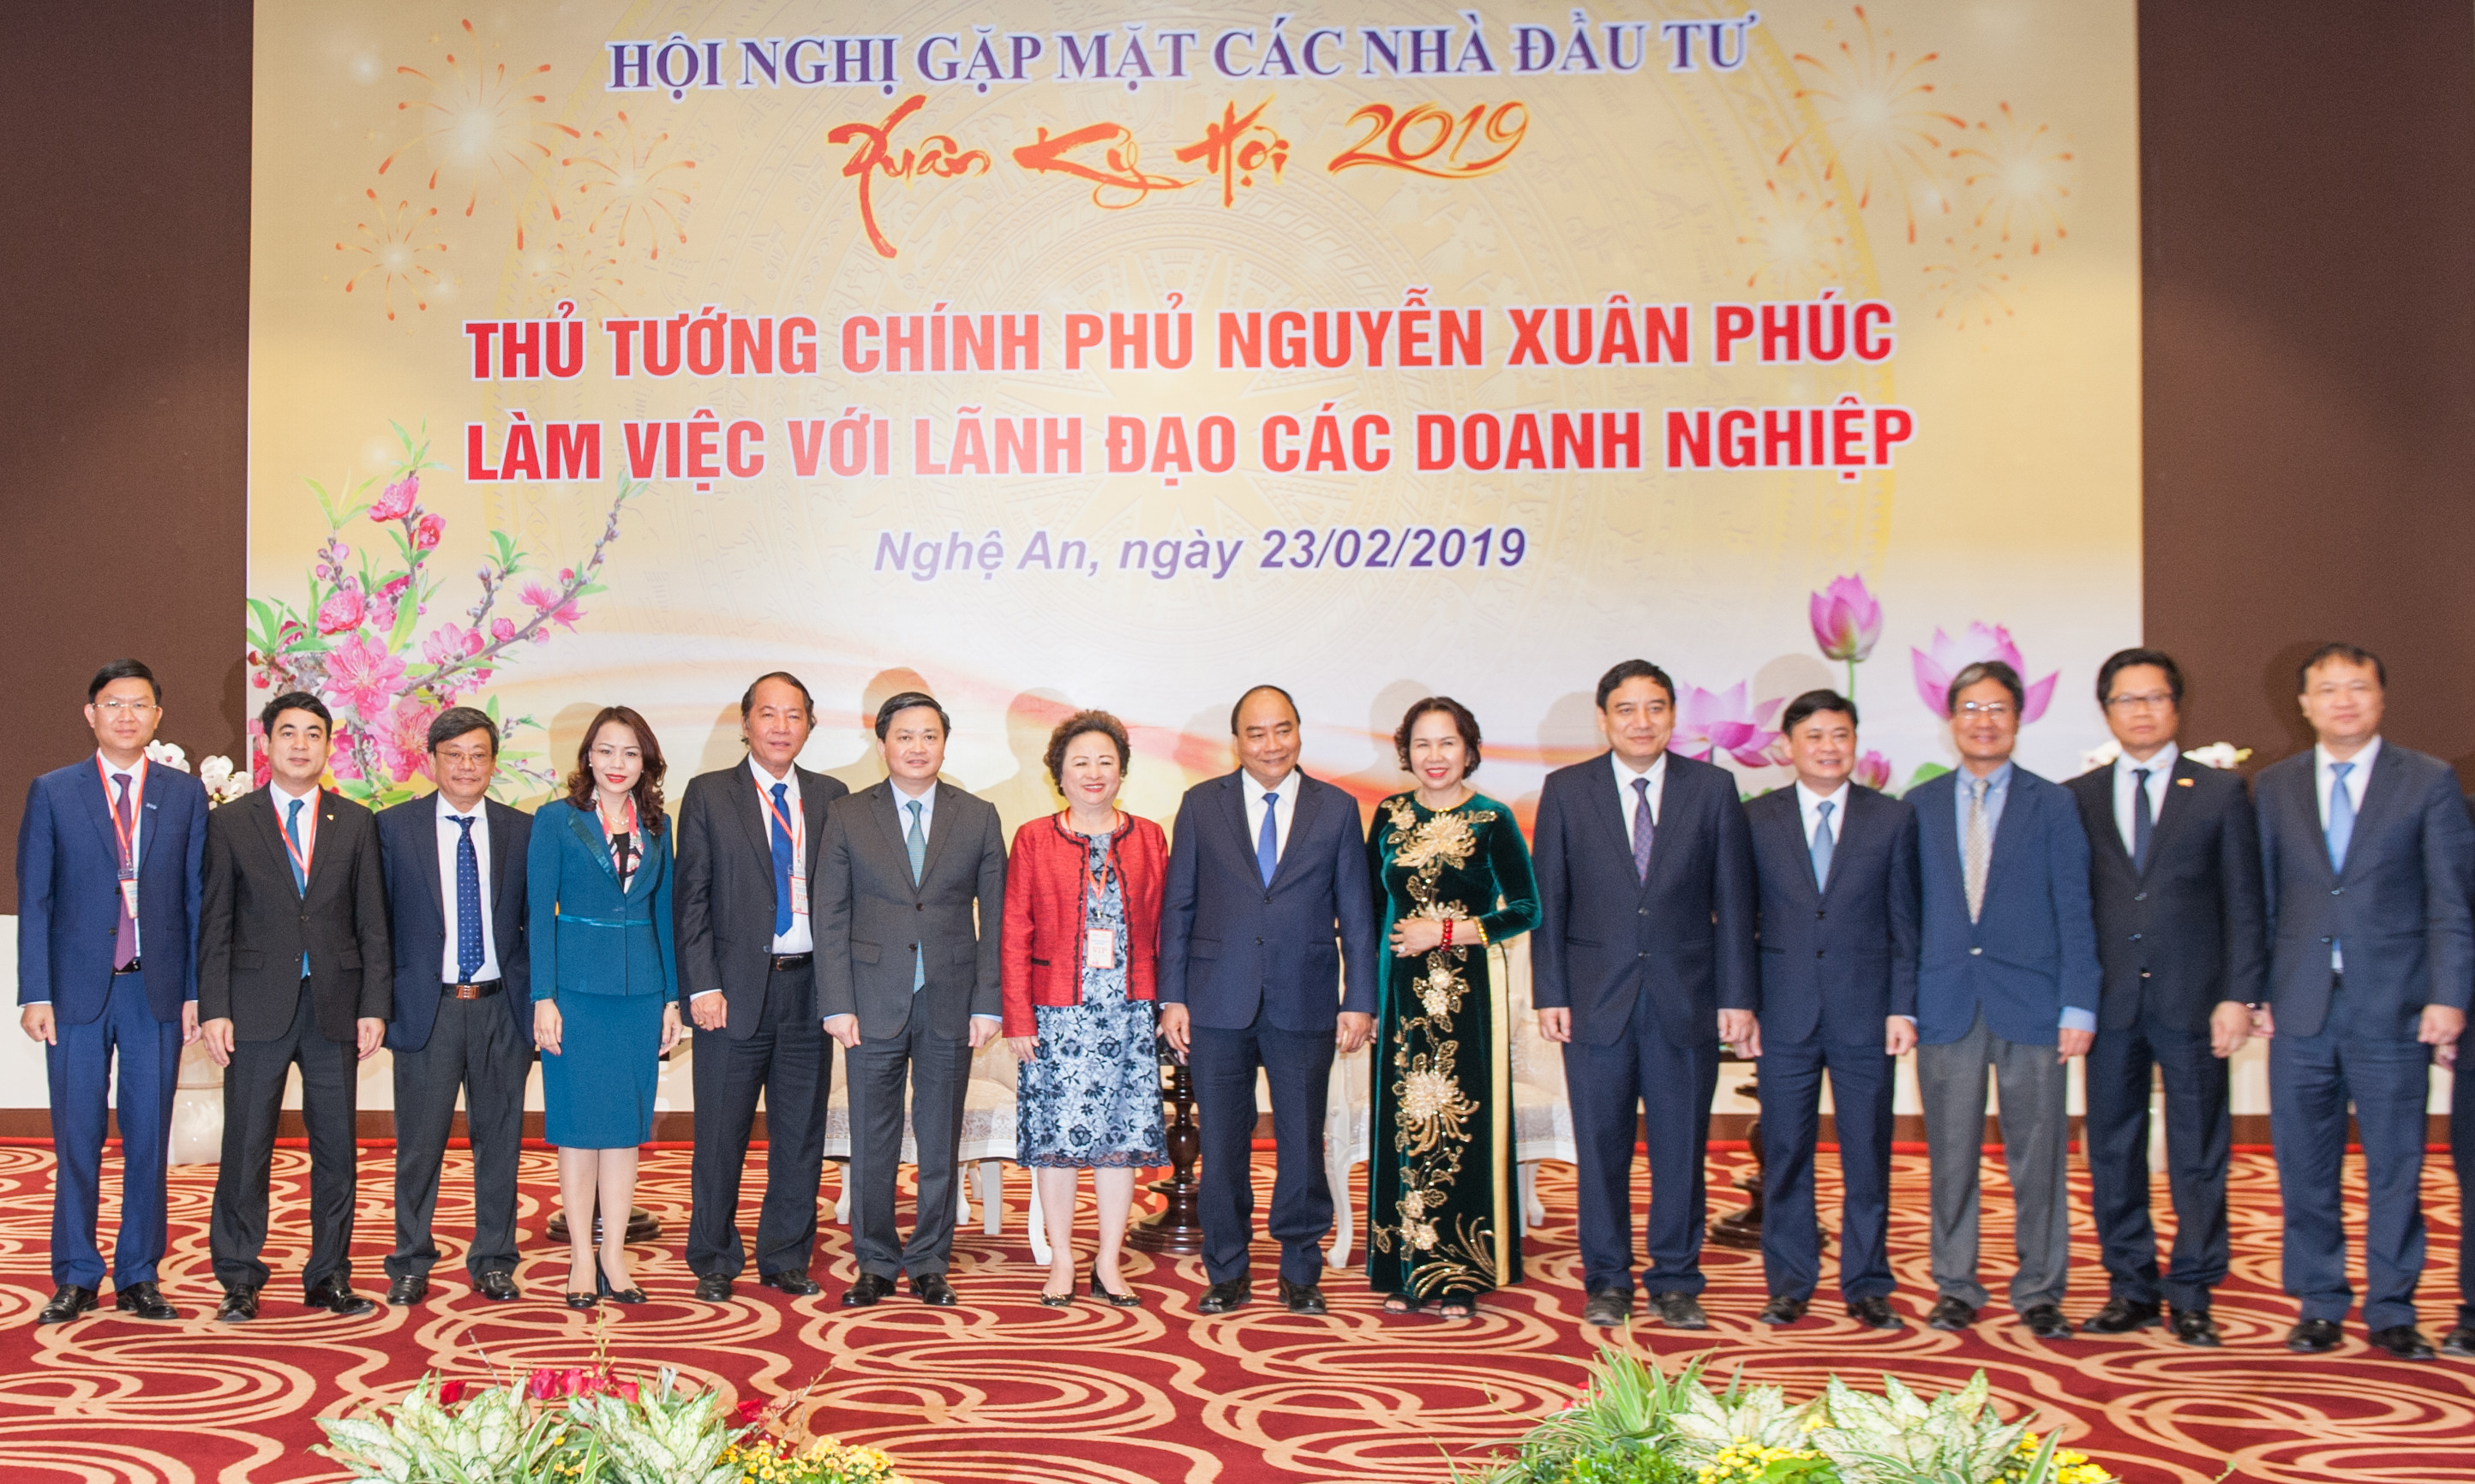 Thủ tướng Nguyễn Xuân Phúc và các đồng chí lãnh đạo tỉnh chụp ảnh lưu niệm với các nhà đầu tư. Ảnh: Thành Cường